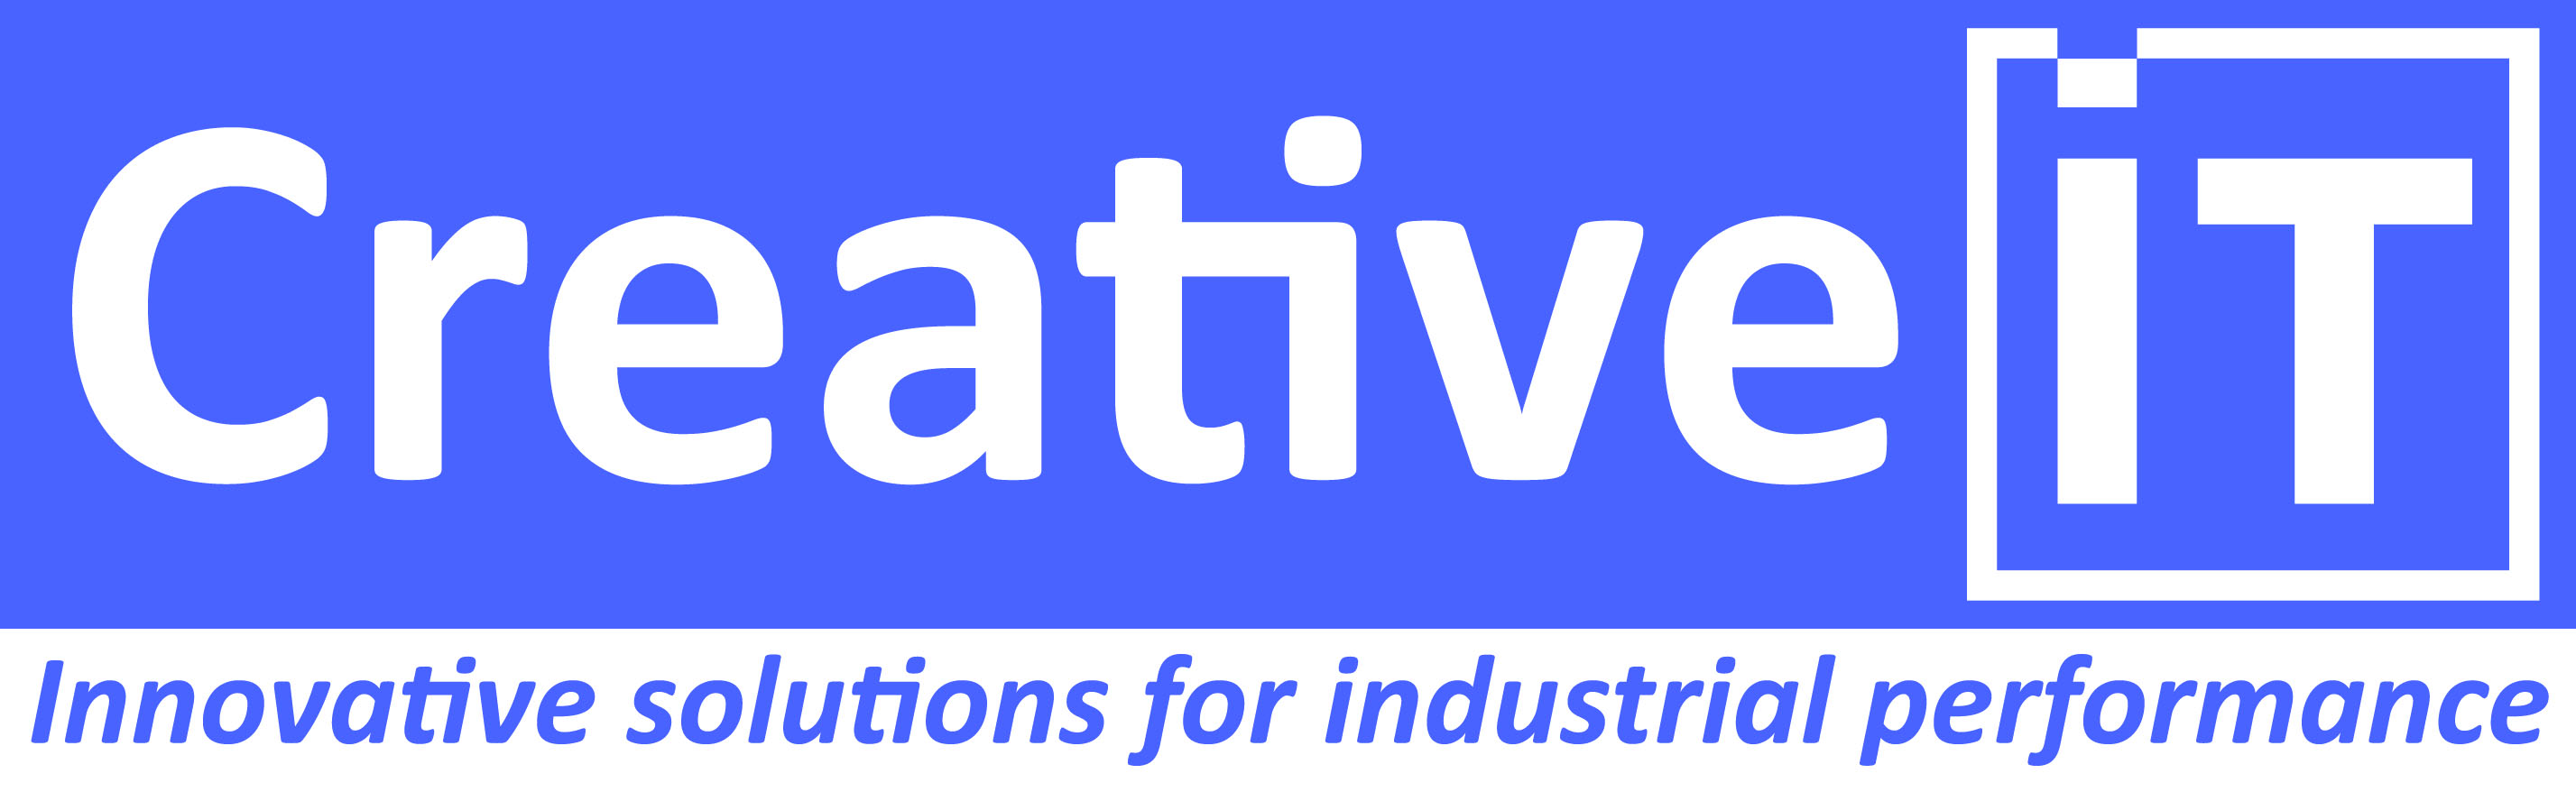 Logo de l'exposant : CREATIVE IT